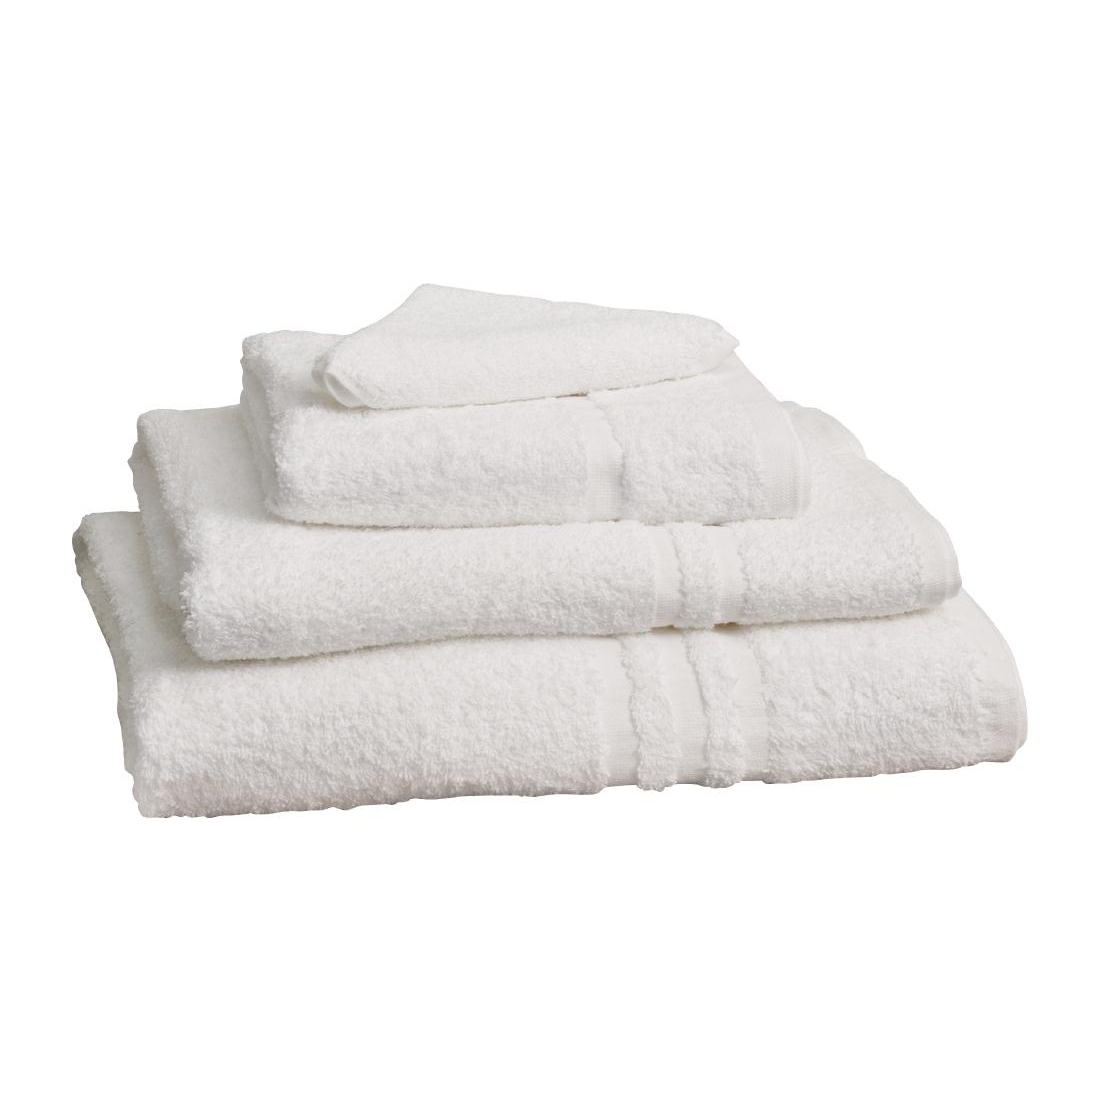 Mitre Essentials Capri Bath Sheet White